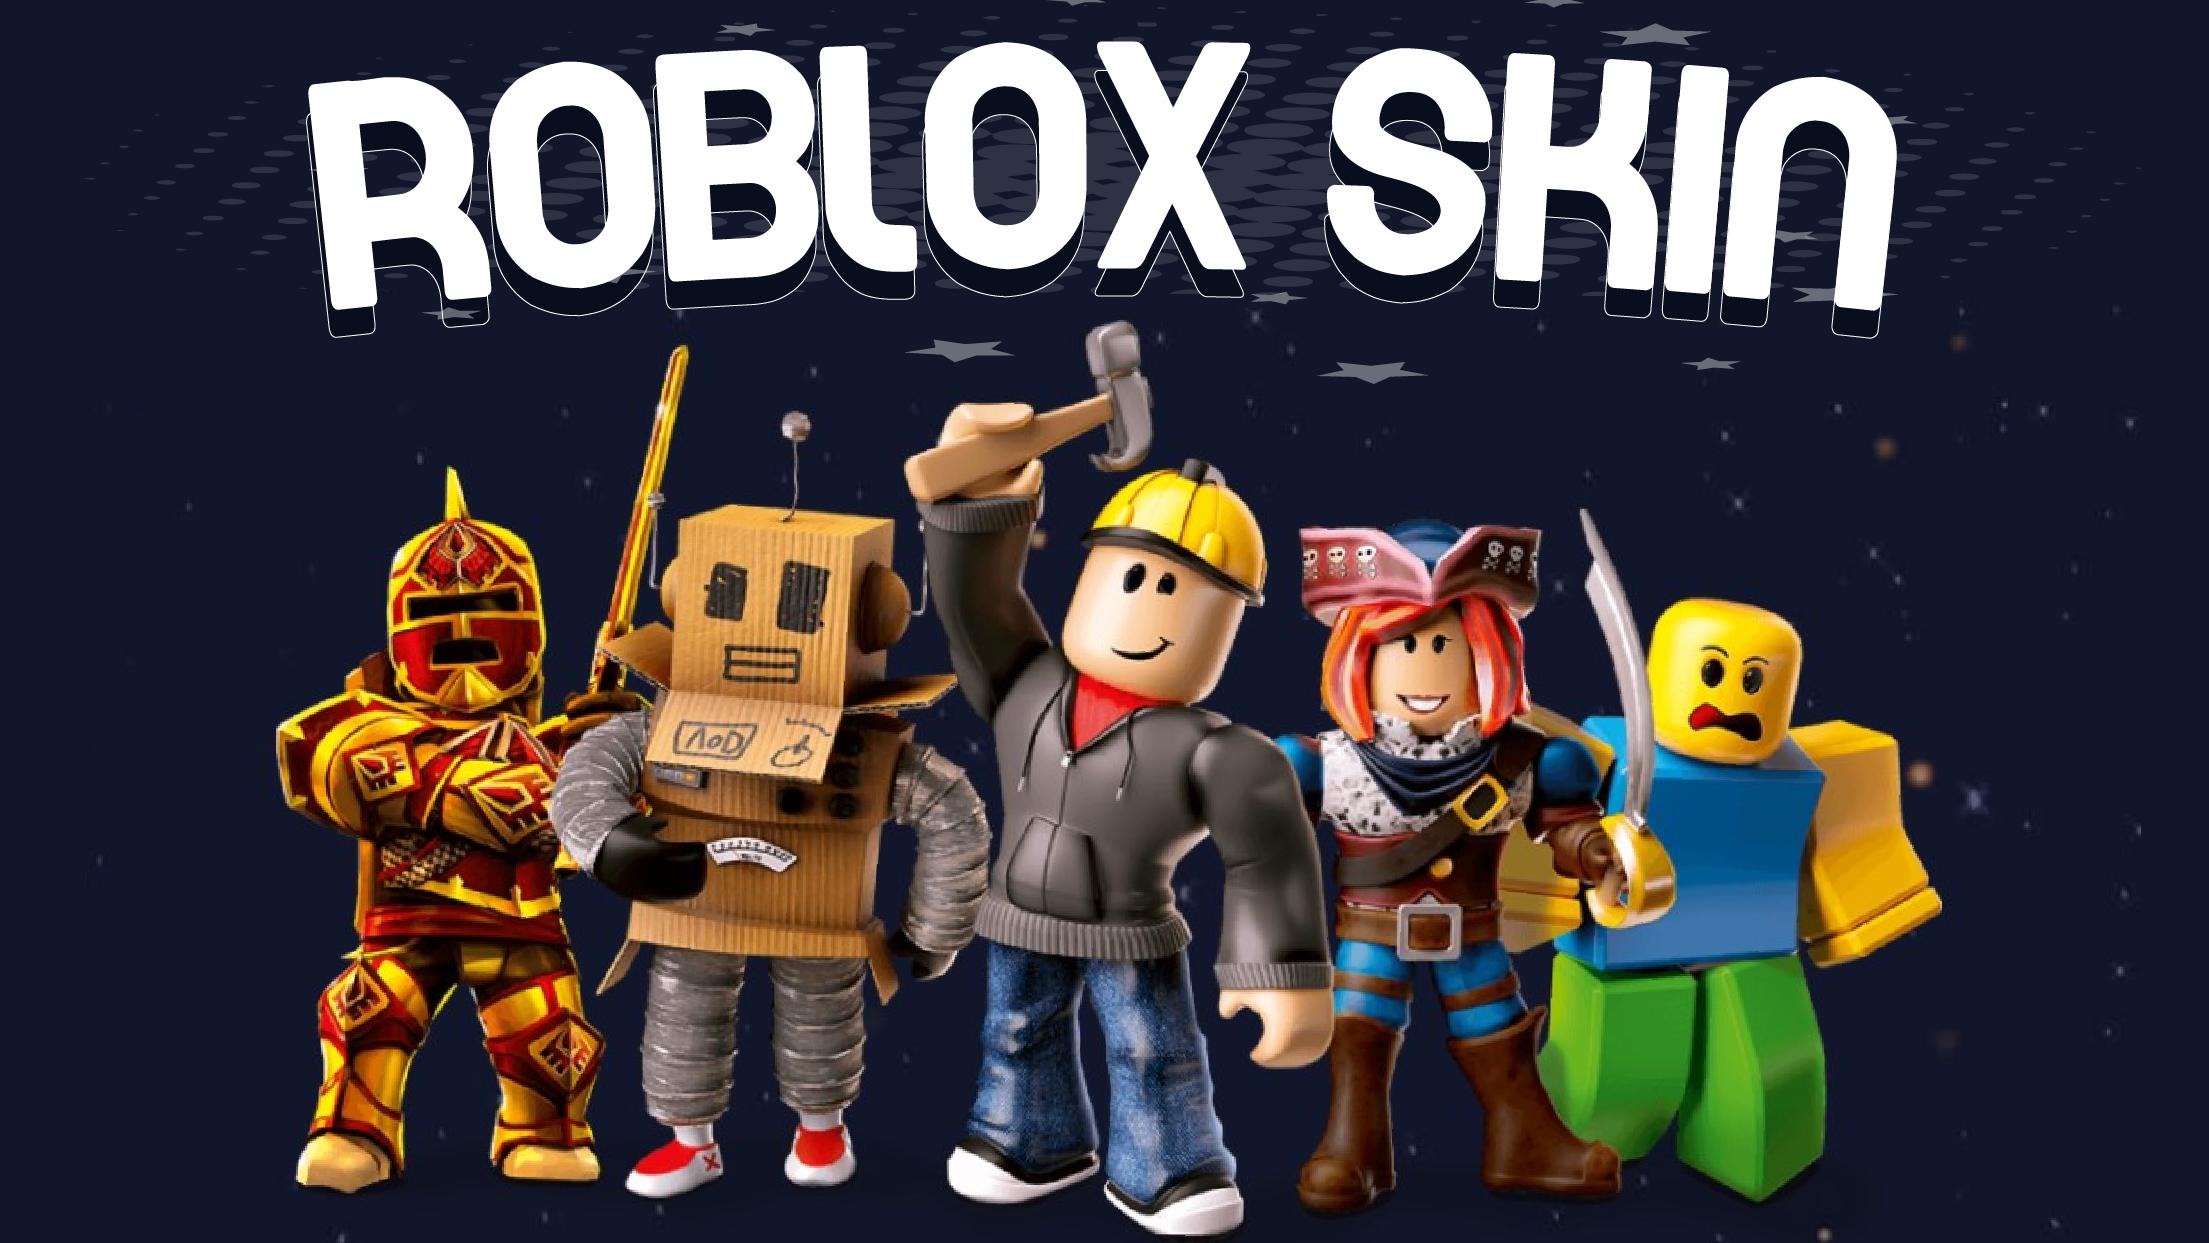 Kiếm được skin miễn phí trong Roblox không còn là điều khó khăn nữa! Với sự giúp đỡ của cộng đồng người chơi đầy nhiệt huyết, danh sách các skins đang ngày càng tăng lên. Hãy tham gia cùng chúng tôi và tận hưởng những bộ trang phục đáng yêu, độc đáo và hoàn toàn miễn phí!